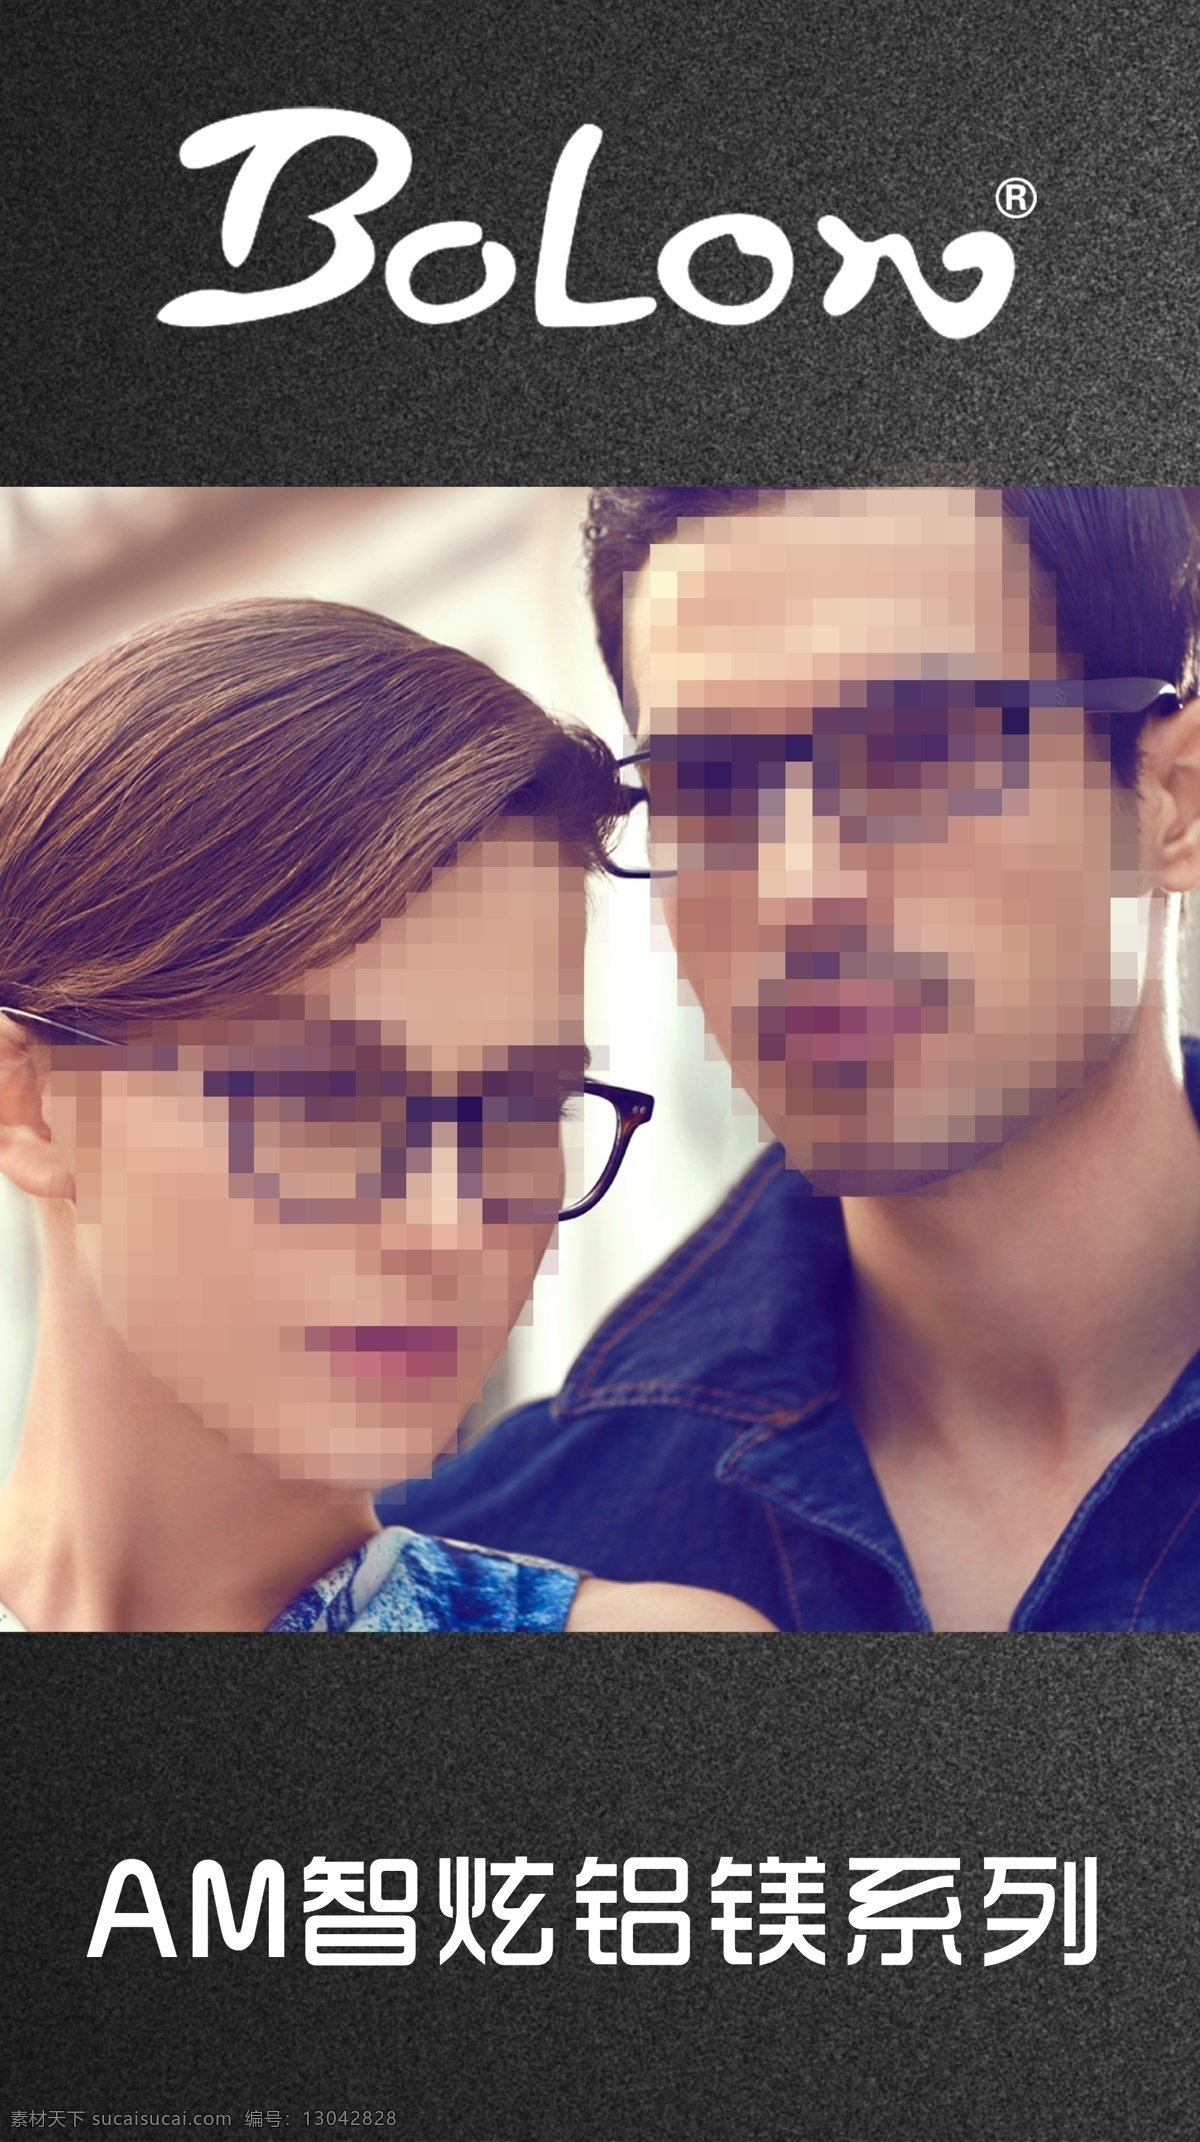 暴龙眼镜 暴龙 眼镜 模板下载 am 智 炫 铝 镁 系 暴龙眼镜商标 暴龙眼镜模特 眼镜模特 广告设计模板 源文件